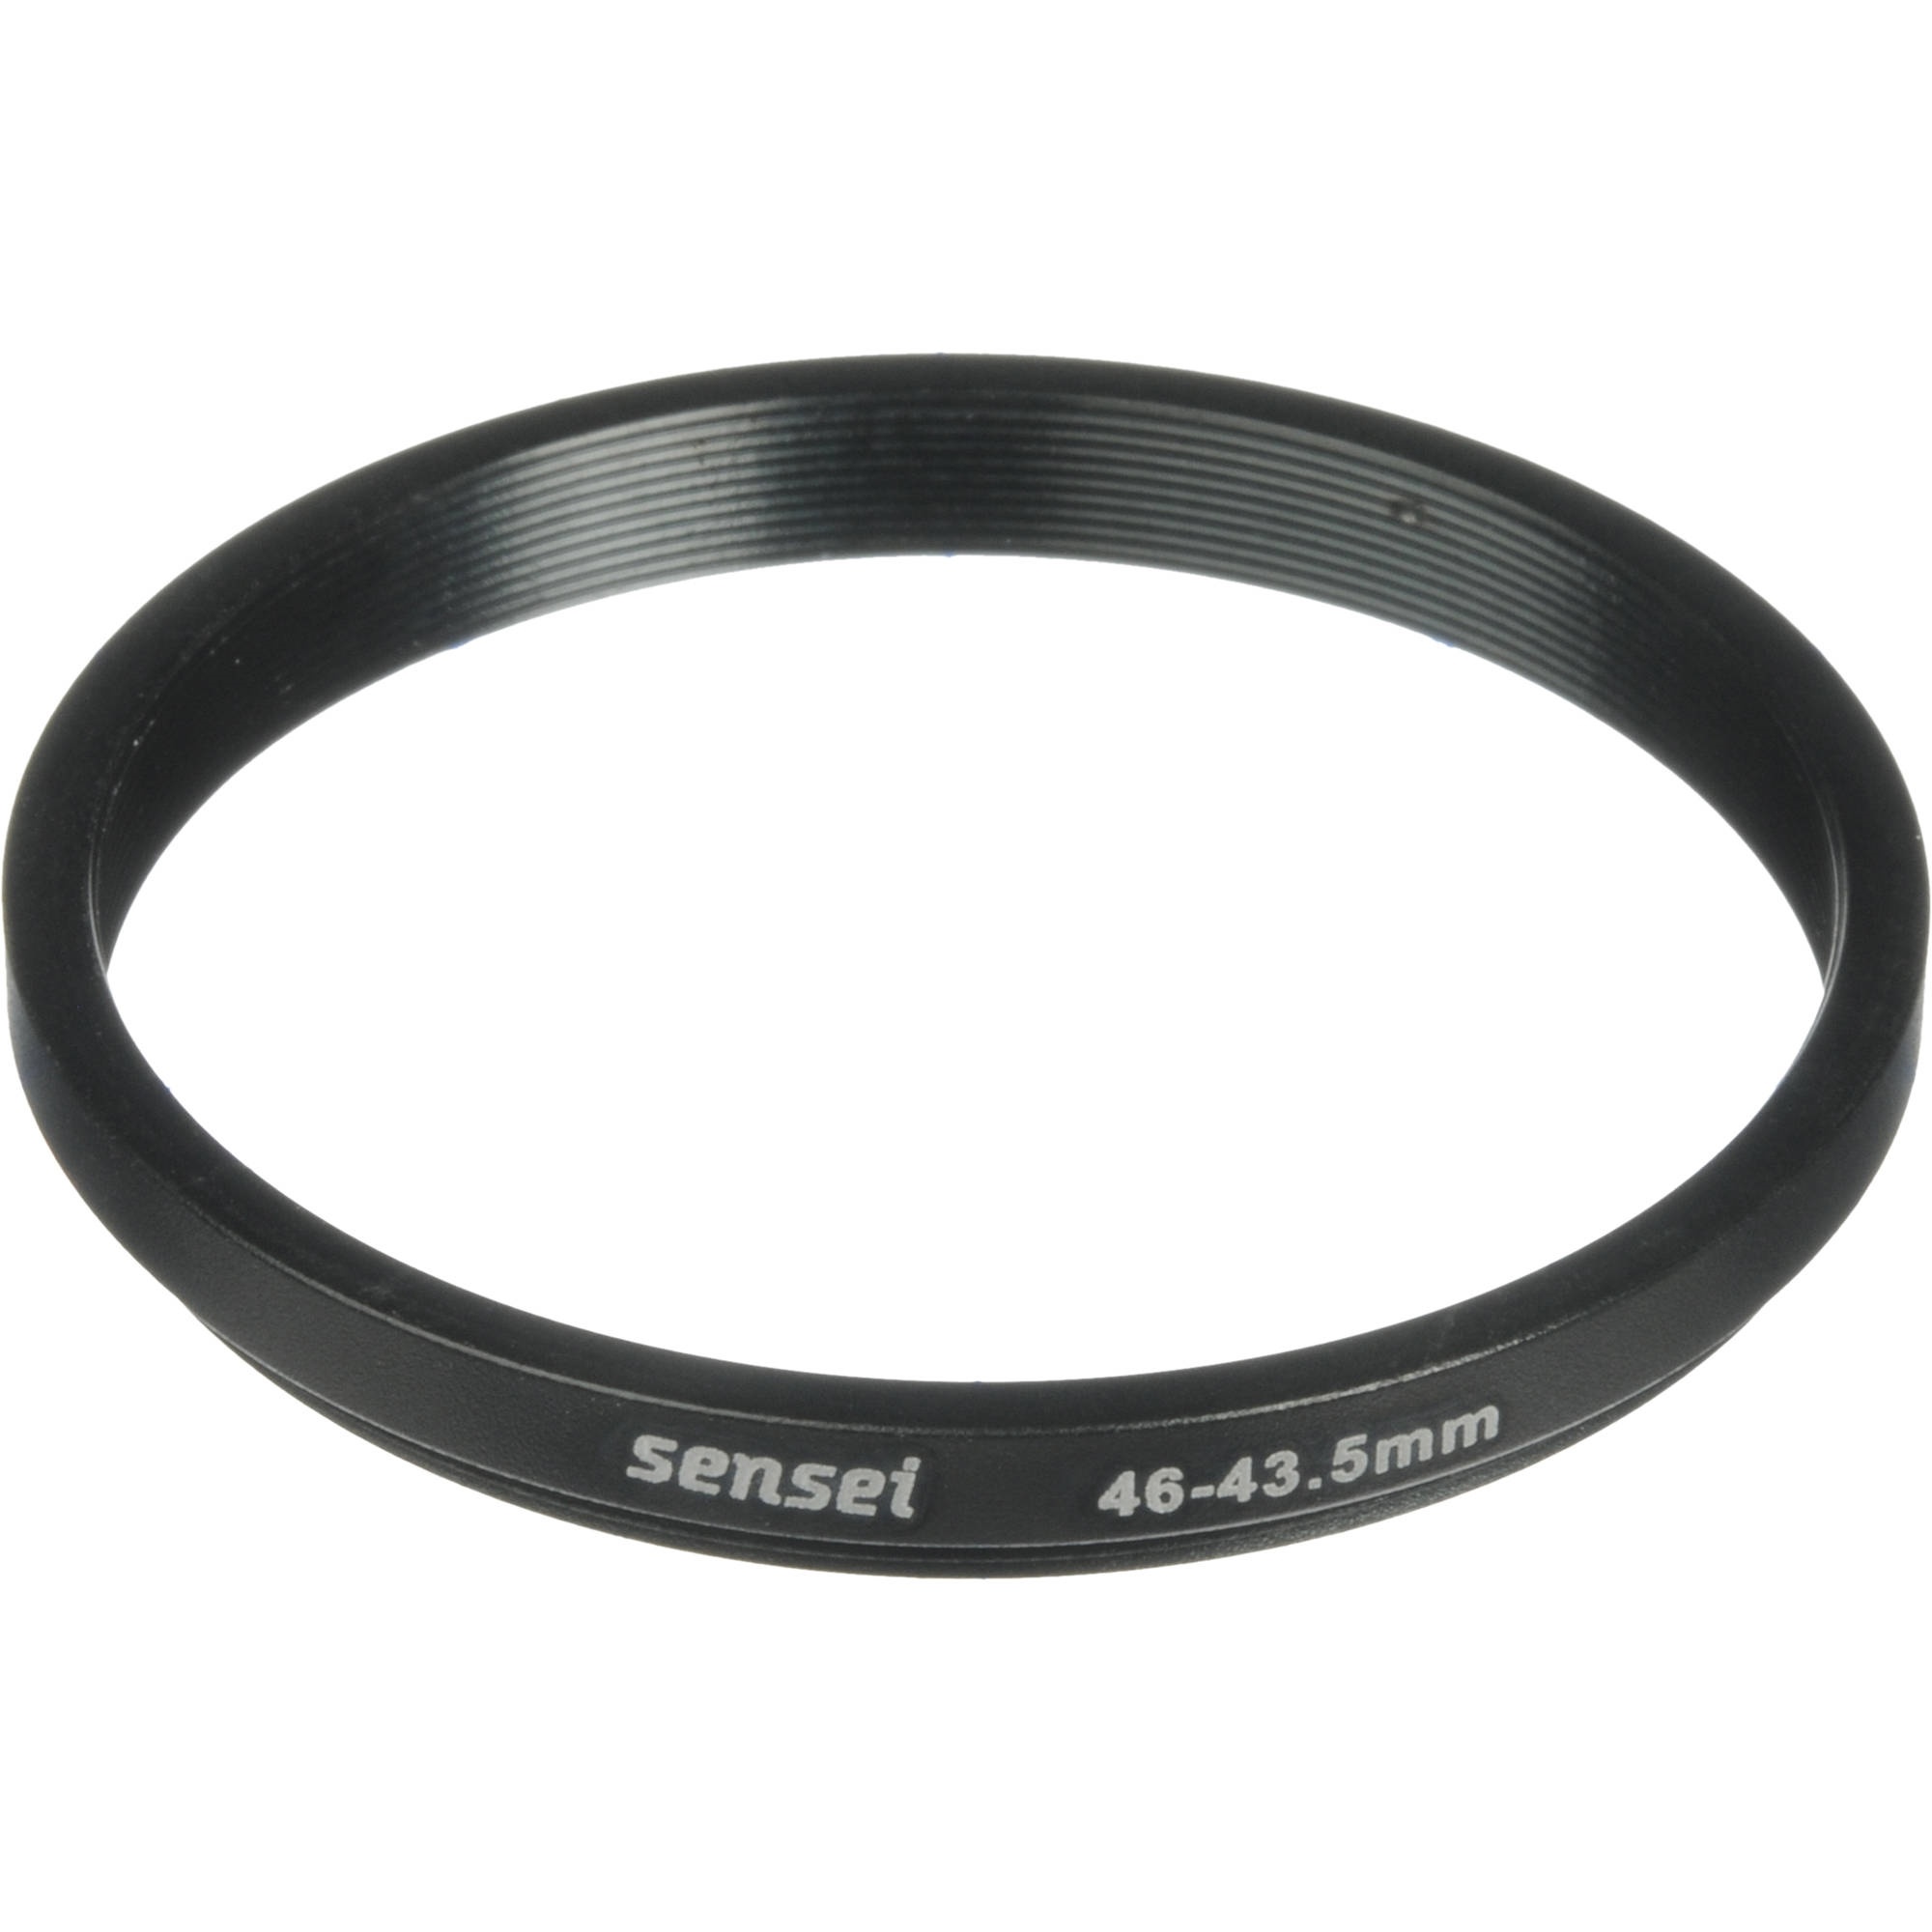 Sensei 46-43.5mm Step-Down Ring